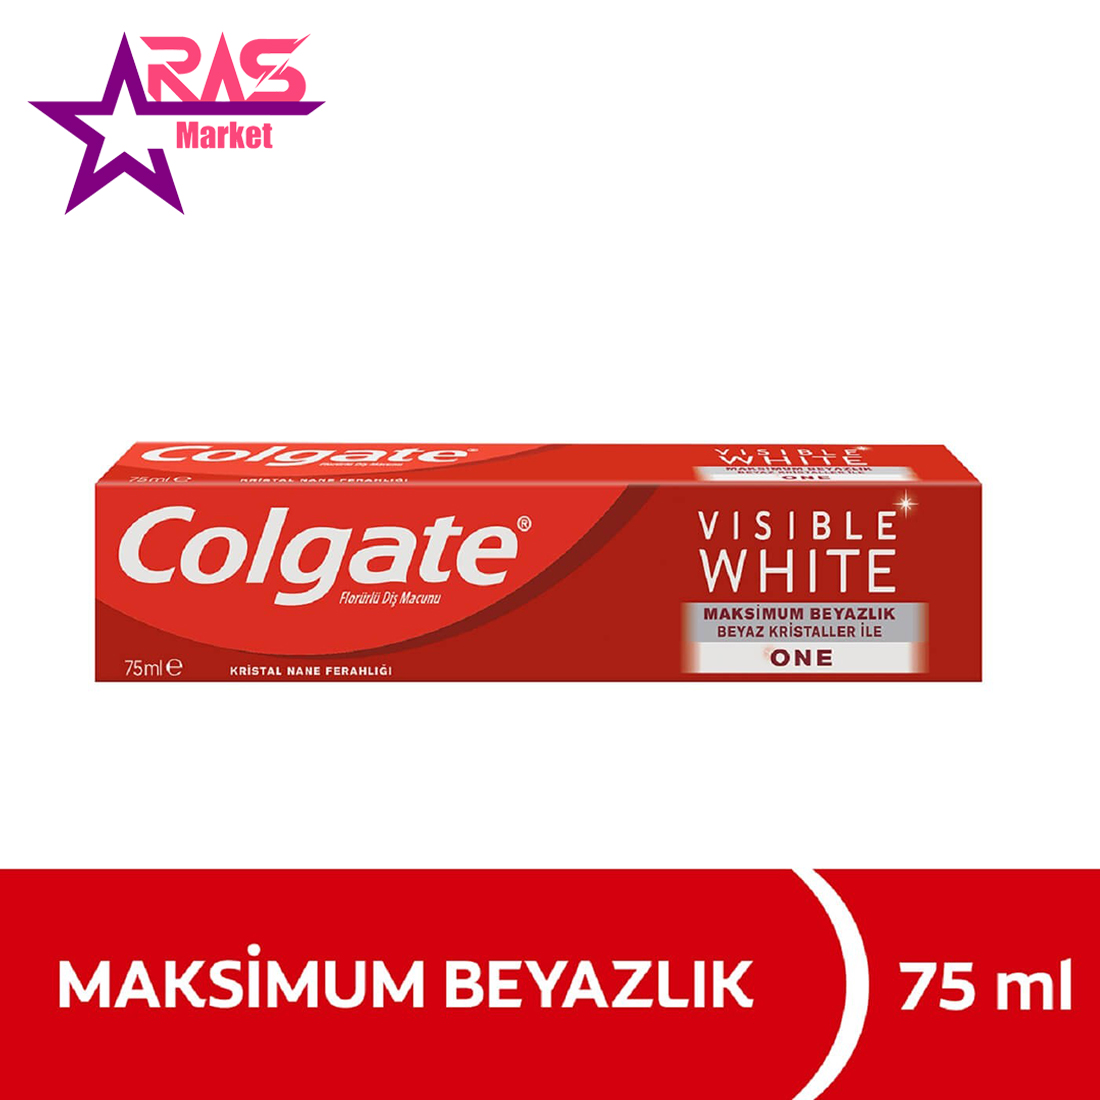 خمیر دندان کلگیت مدل Visible White سفید کننده 75 میلی لیتر ، فروشگاه اینترنتی ارس مارکت